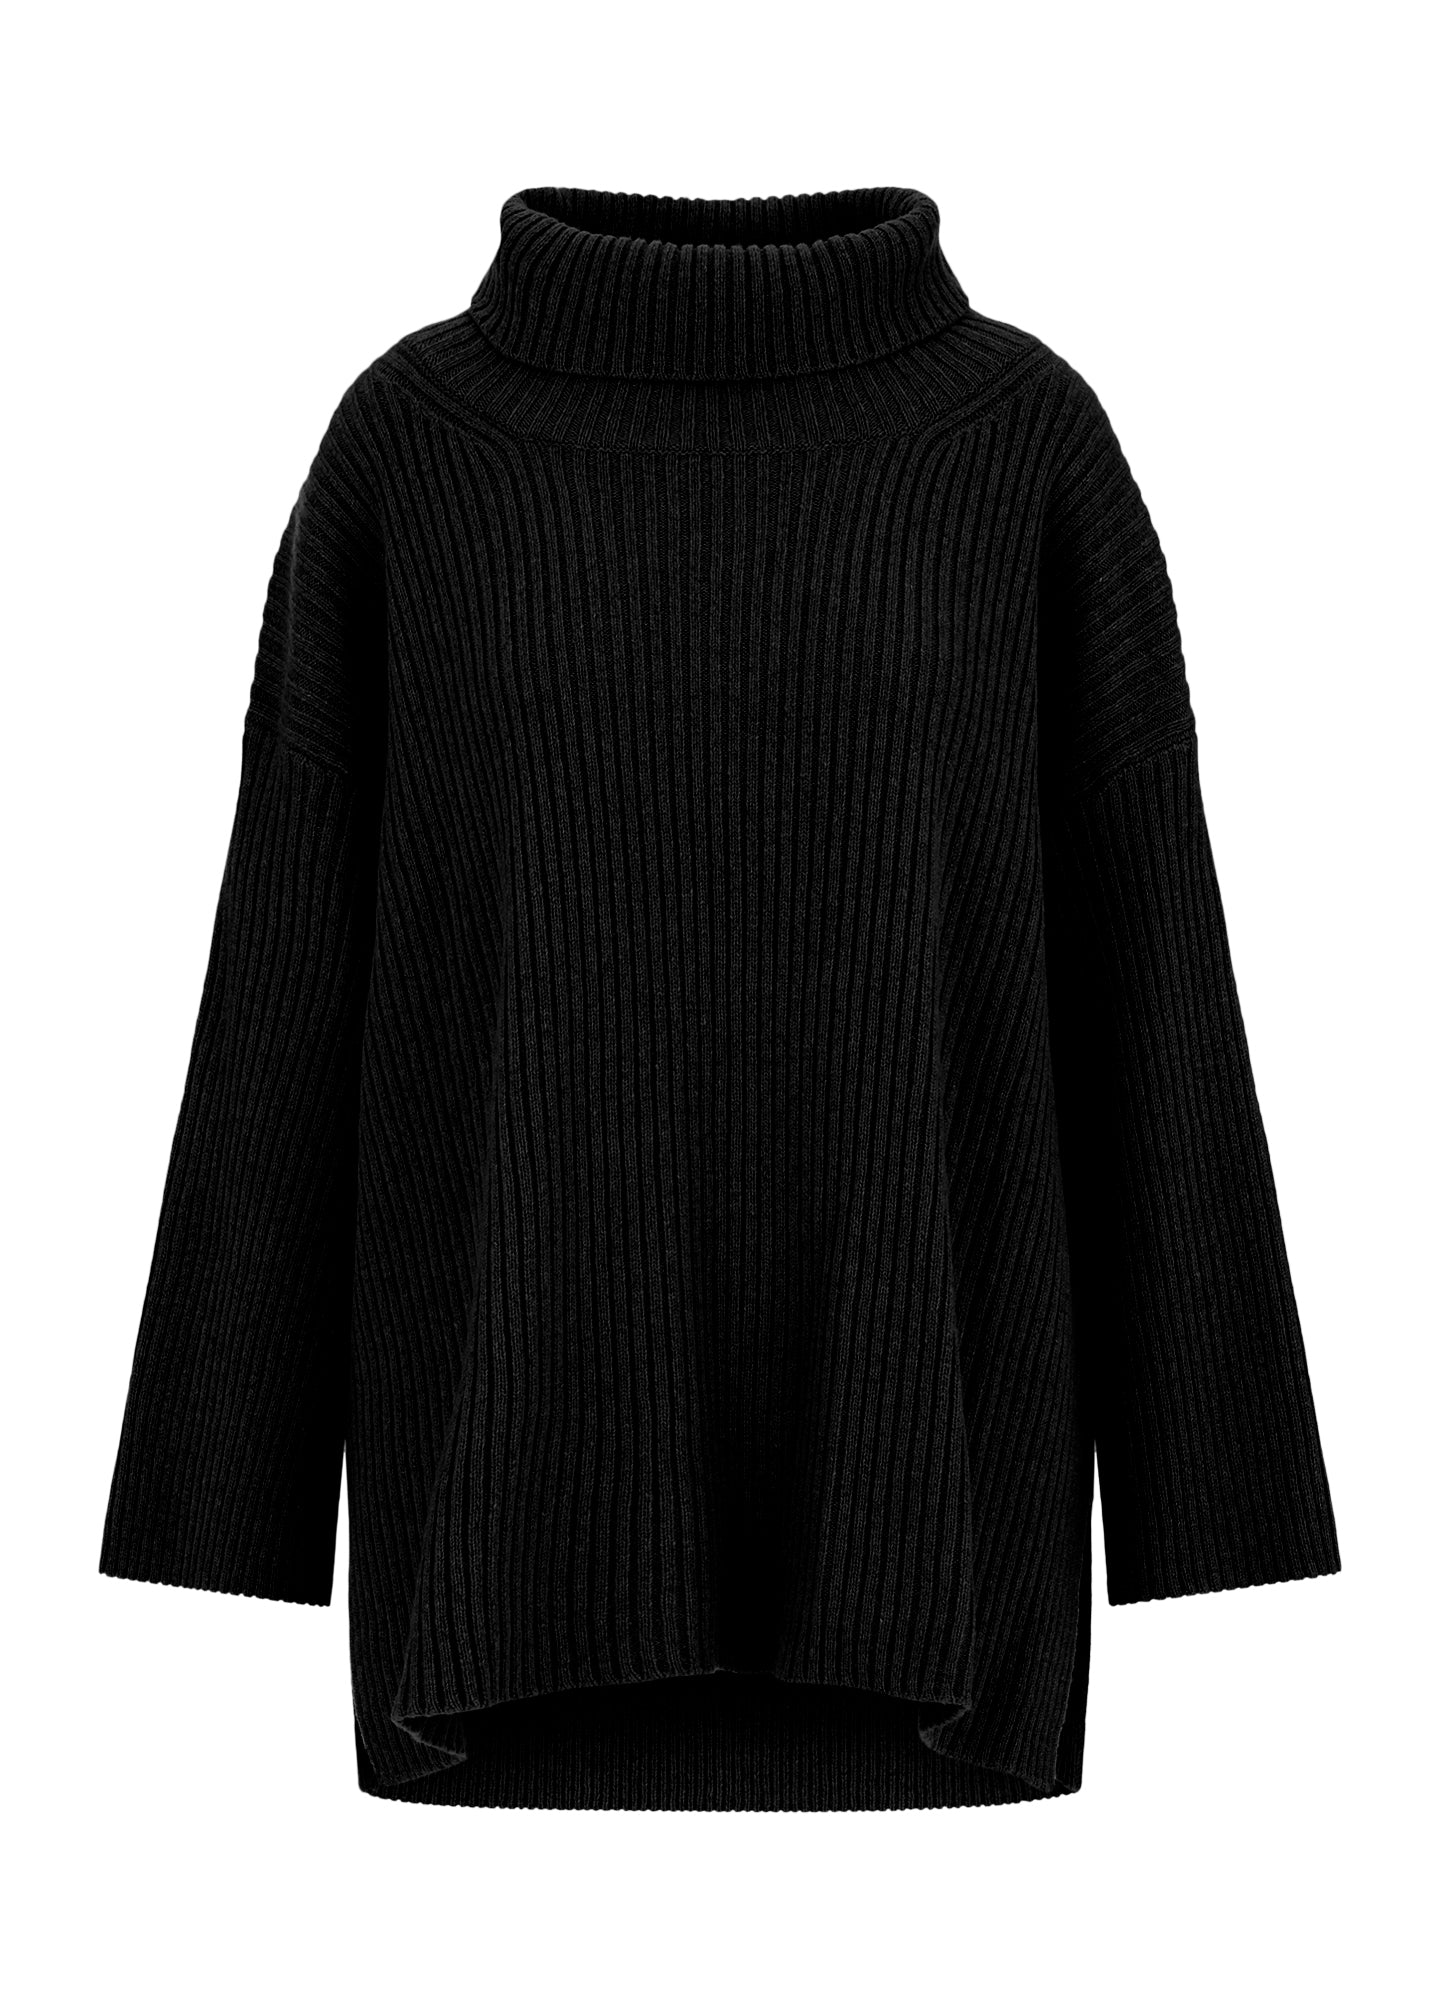 Black cashmere oversize turtle neck side slit jumper